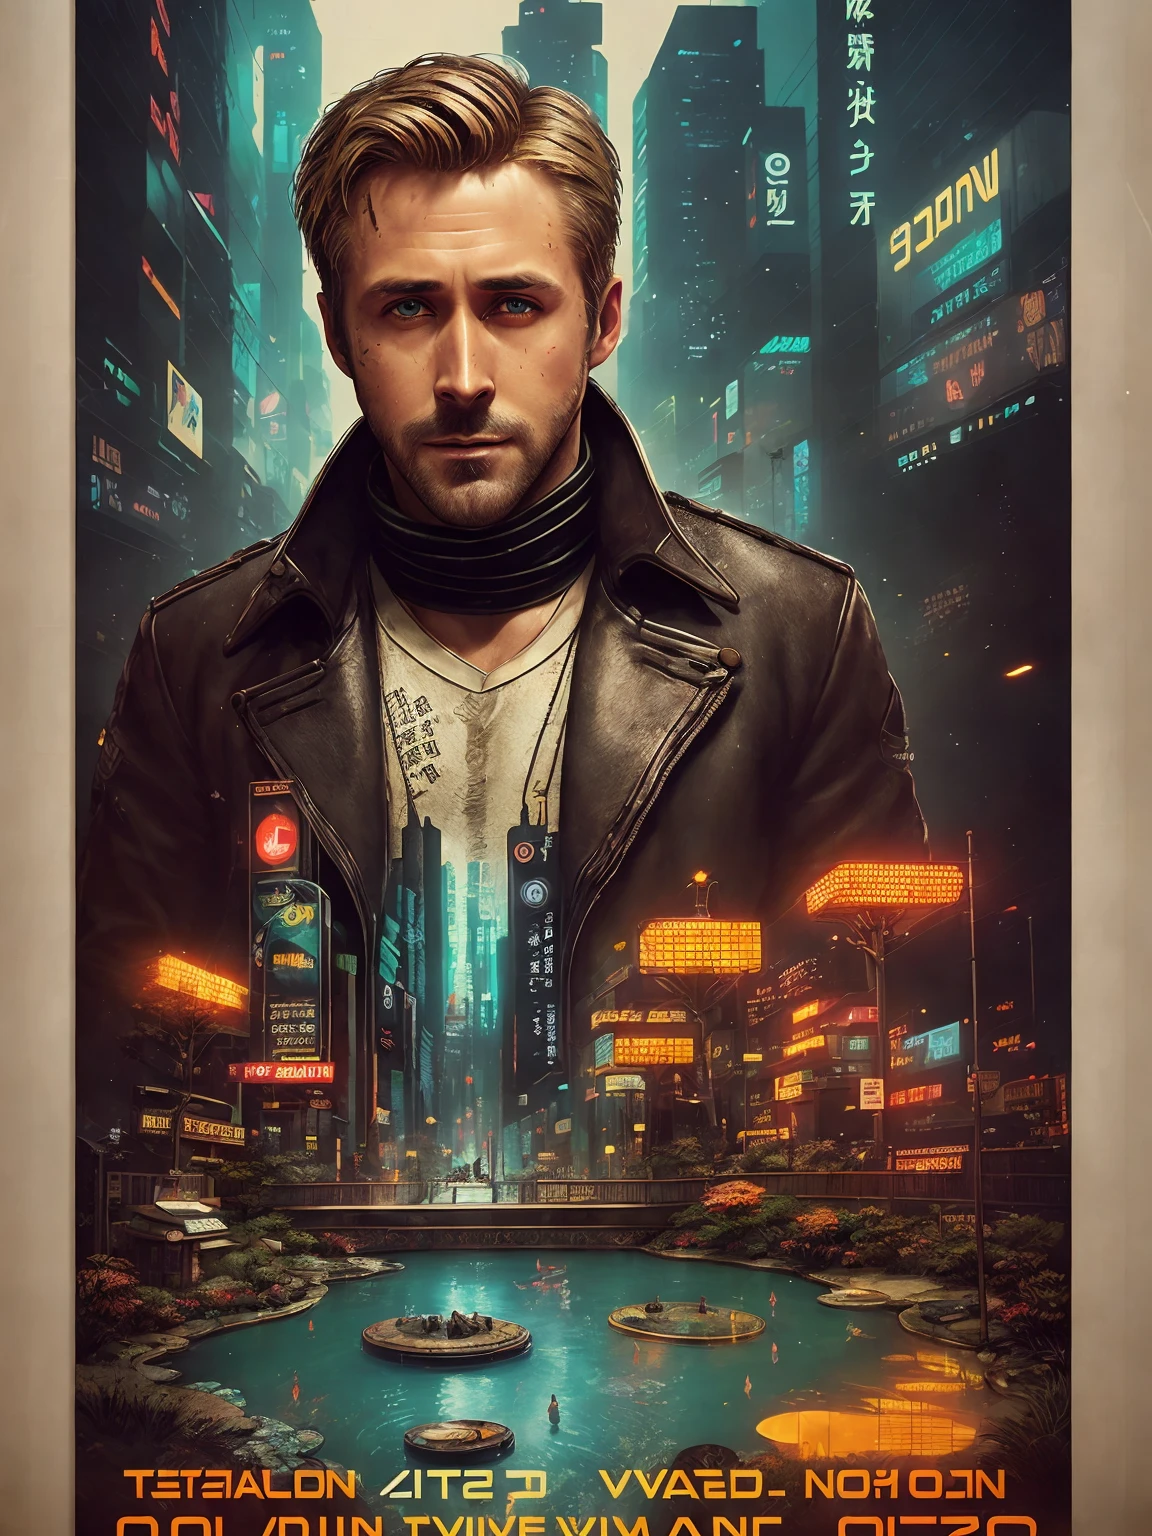 رايان جوسلينج البالغ من العمر 40 عامًا من Blade Runner 2049, خلل رقمي, (ملصق:1.6), ملصق on wall, movie ملصق, لَوحَة, ((التحول الميل))
يرتدي معطفًا بنيًا قديمًا من جلد الغنم مع صوف قذر,
(حديقة الصخور اليابانية والبركة:1.2), كوي الكارب, (((بونساي))), ((أسلوب داخلي عالي التقنية ومستقبل)), (((وجه مفصل للغاية))),
((نسيج الوجه والجلد فائق التفاصيل)), مفصلة بشكل معقد, التفاصيل الدقيقة, مفرط التفاصيل, com.raytracing, تشتت تحت السطح, إضاءة ناعمة منتشرة, عمق المجال الضحل, بواسطة أوليفر ويتر,